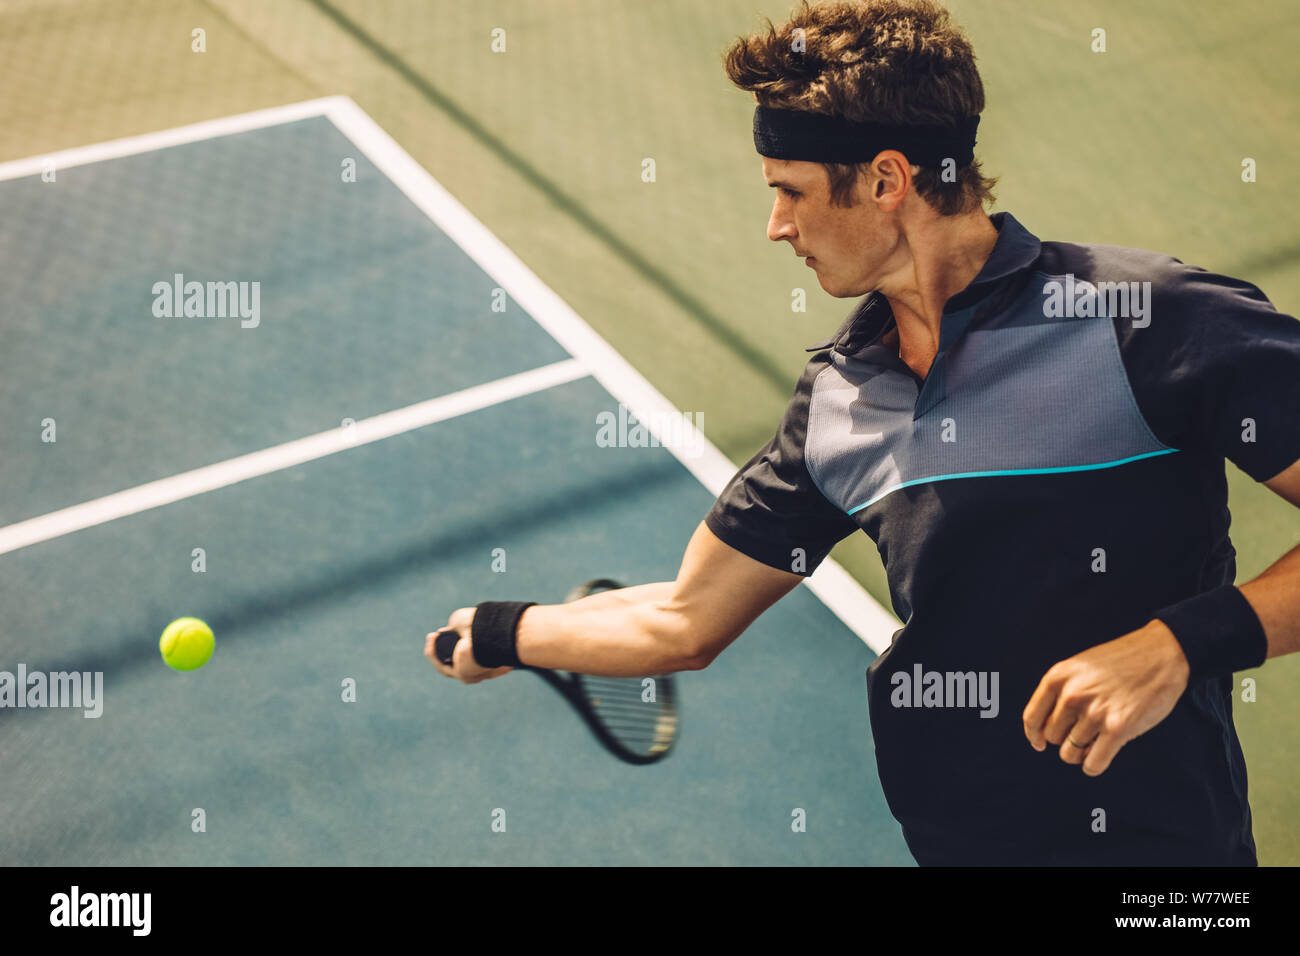 Joueur de tennis professionnel frapper forehand sur surface dure. Jeune homme dans les vêtements de sport en jouant au tennis sur le court de tennis. Banque D'Images